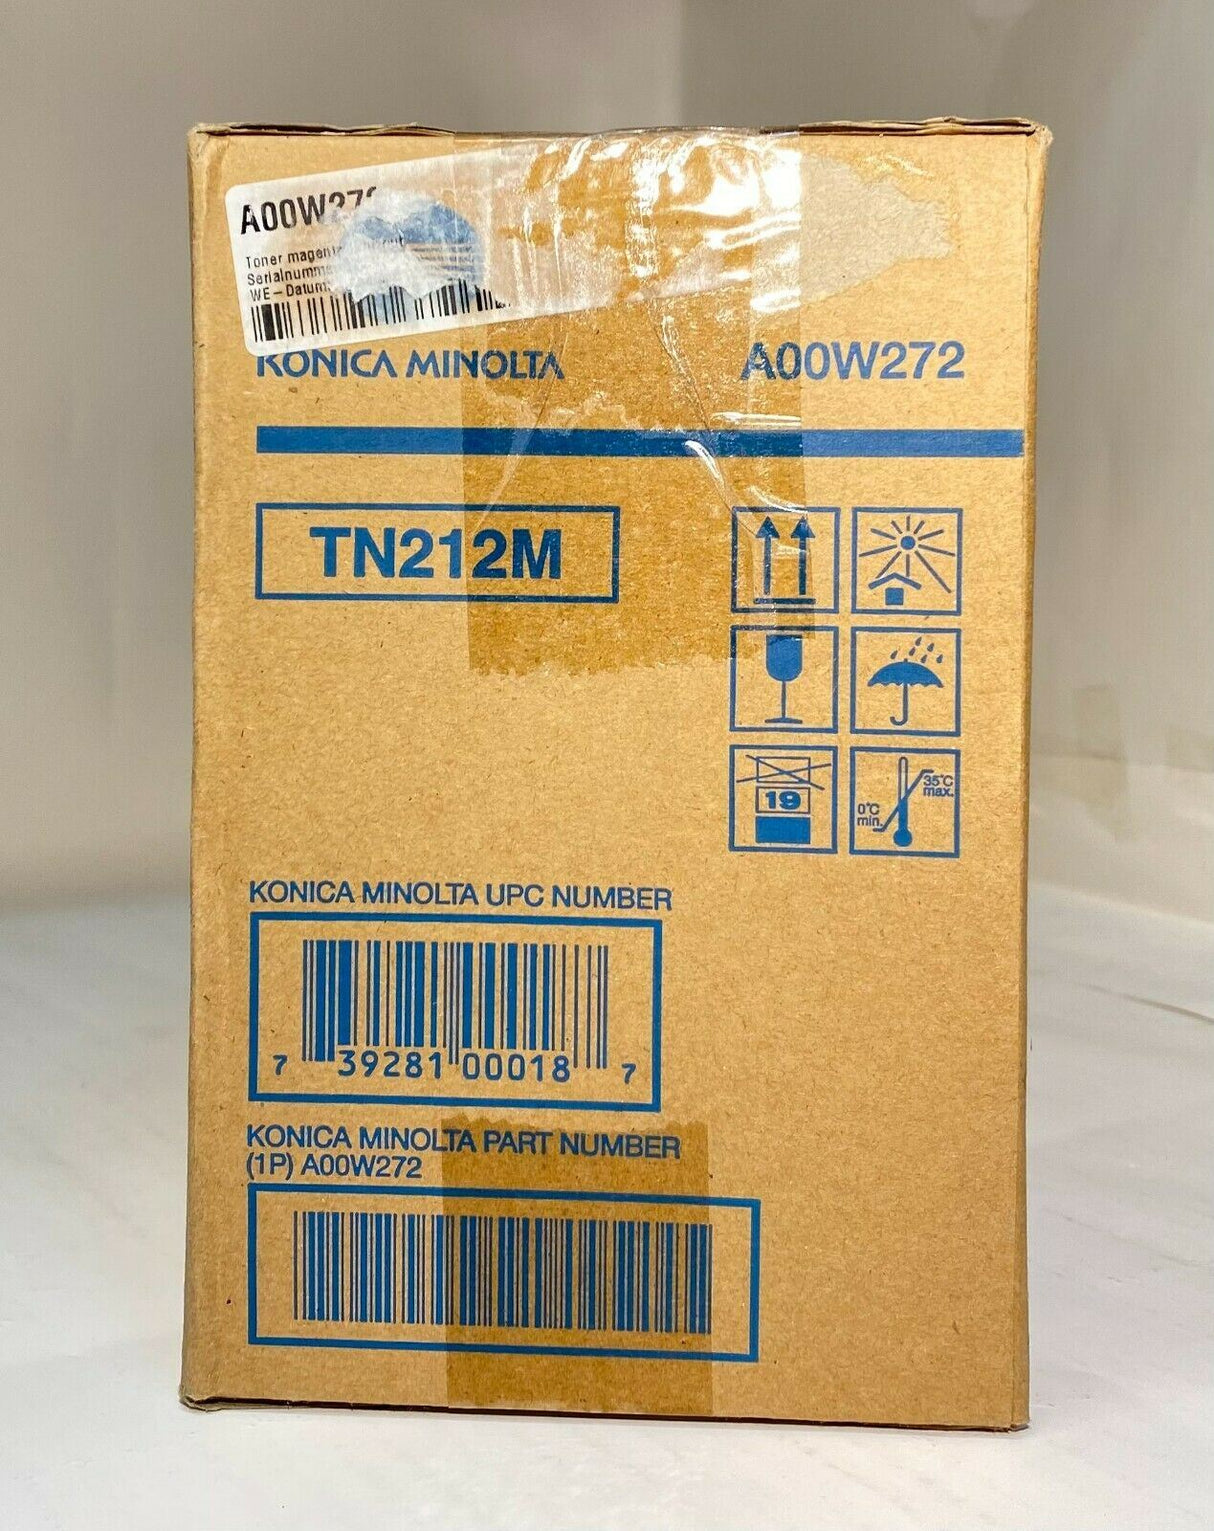 "Toner Magenta d'origine Konica Minolta TN212M A00W272 pour Magicolor 2550 CK